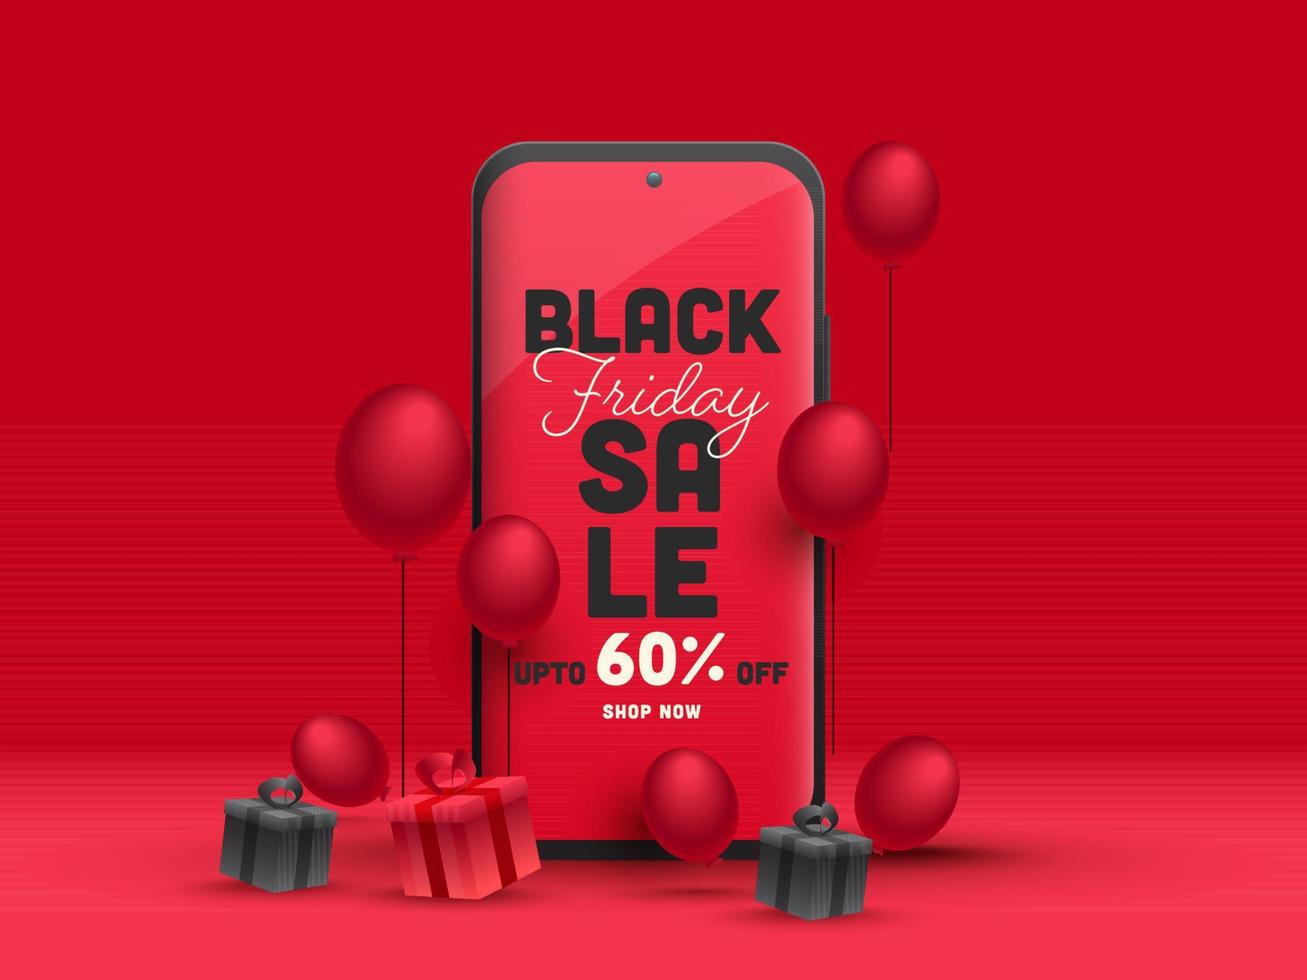 svart fredag försäljning app i smartphone med 60 rabatt erbjudande, realistisk gåva lådor och ballonger på röd bakgrund. vektor